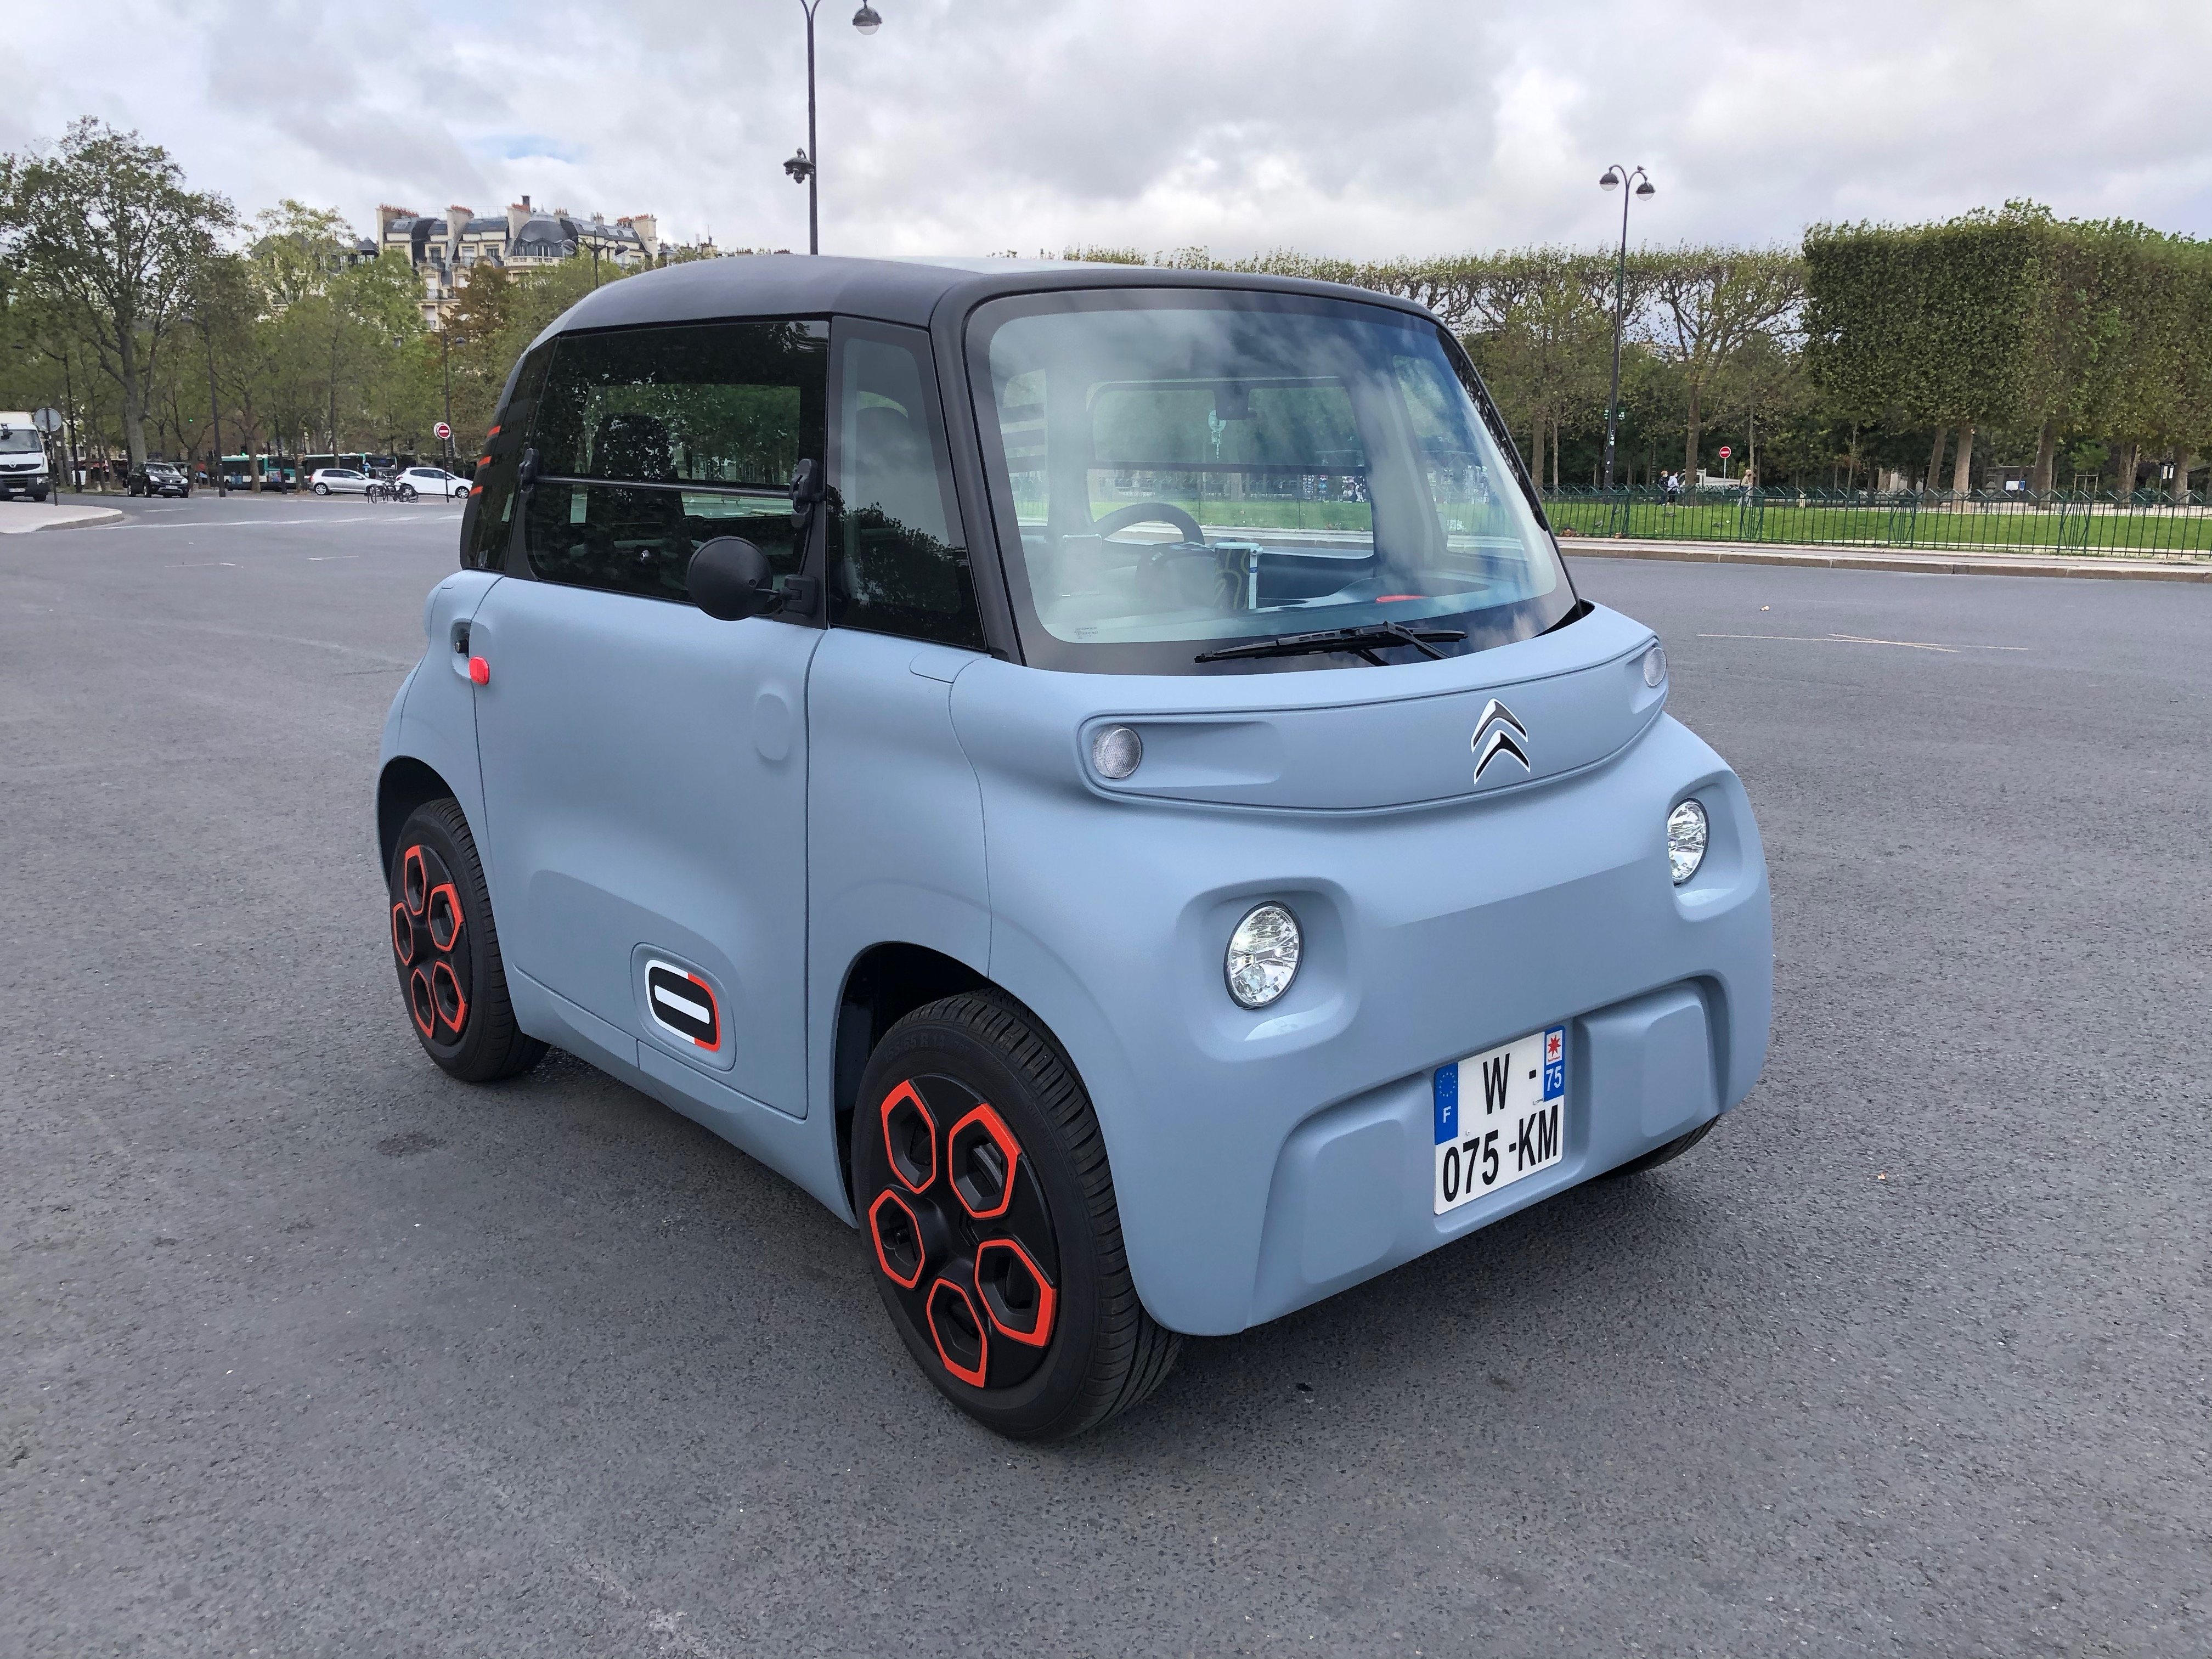 Test] Citroën Ami – 100% ëlectric : une voiture électrique entre deux mondes